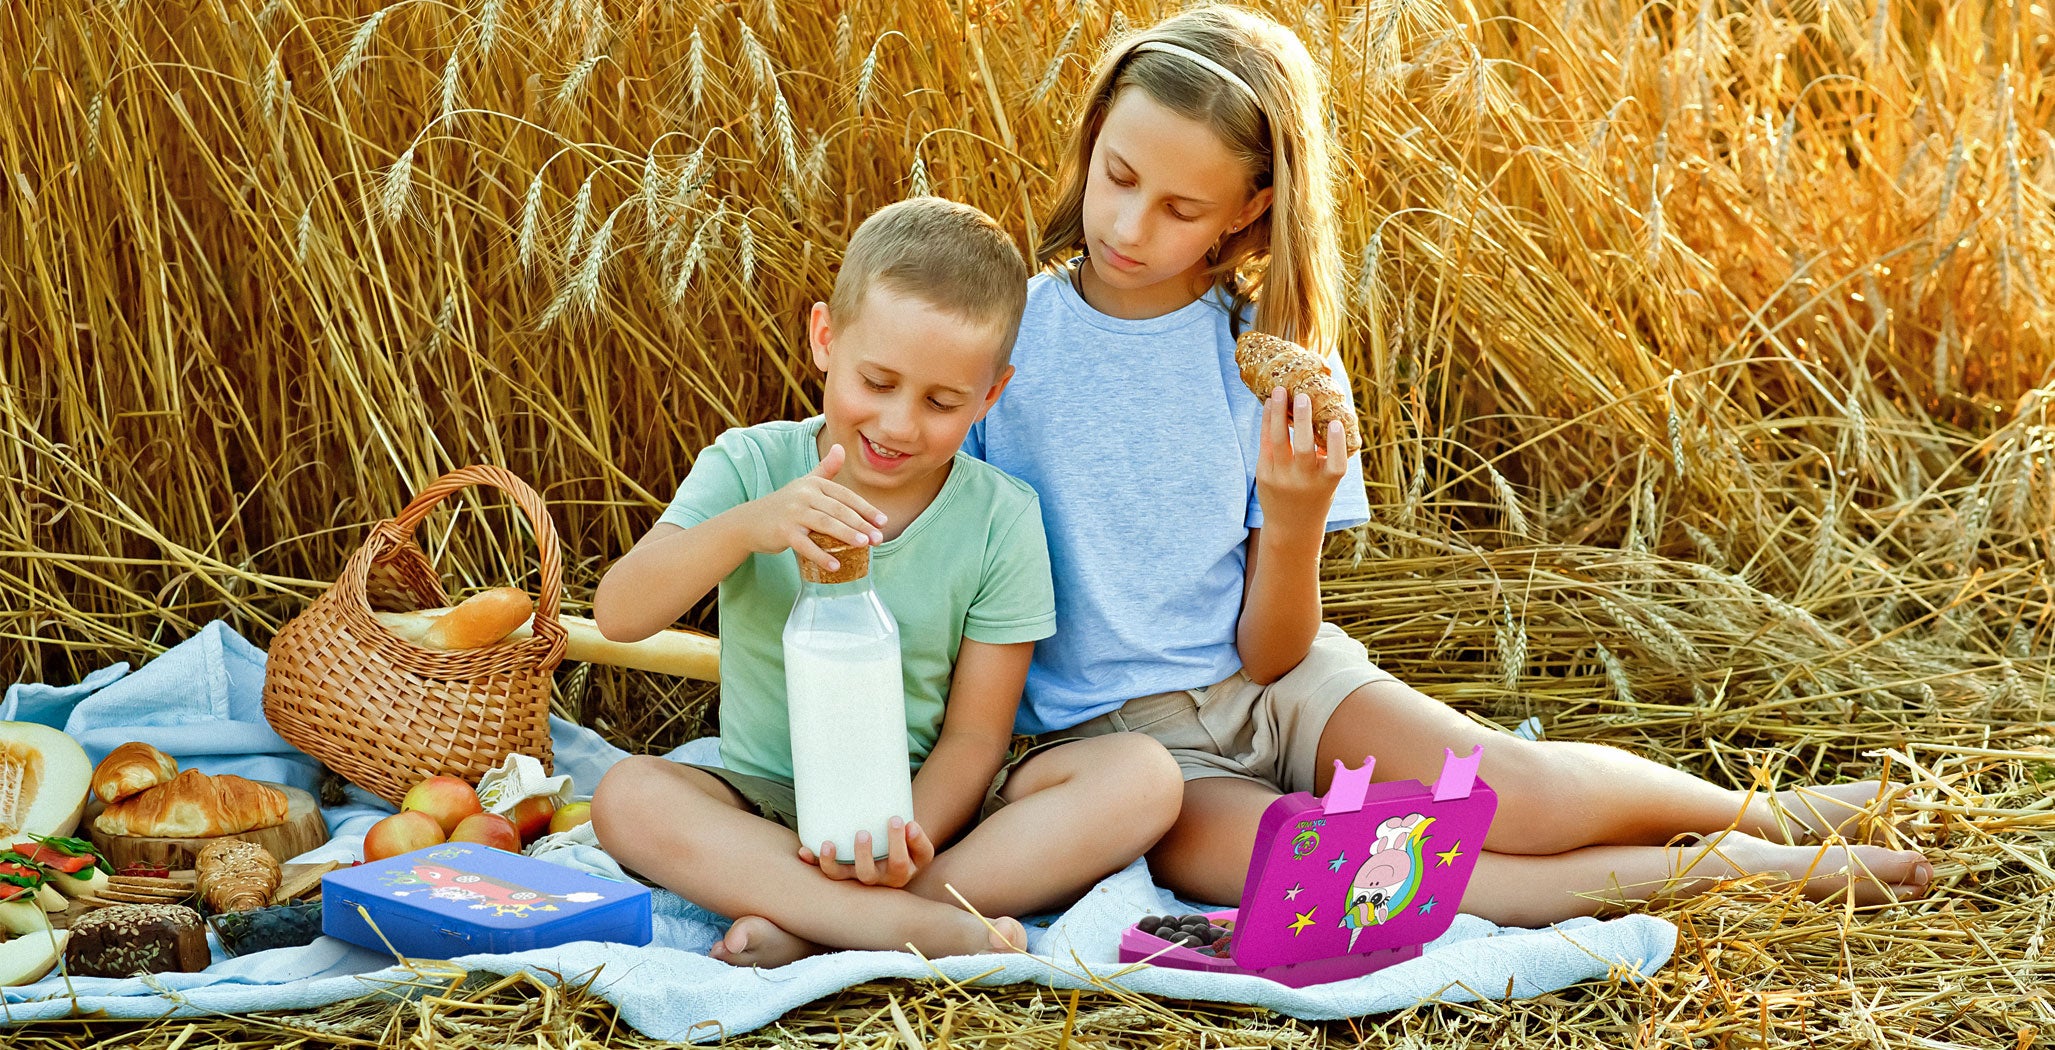 TAKWAY Kinder Lunch Boxen | TAKWAY Kinder Bento Boxen und Brotdosen aus Edelstahl